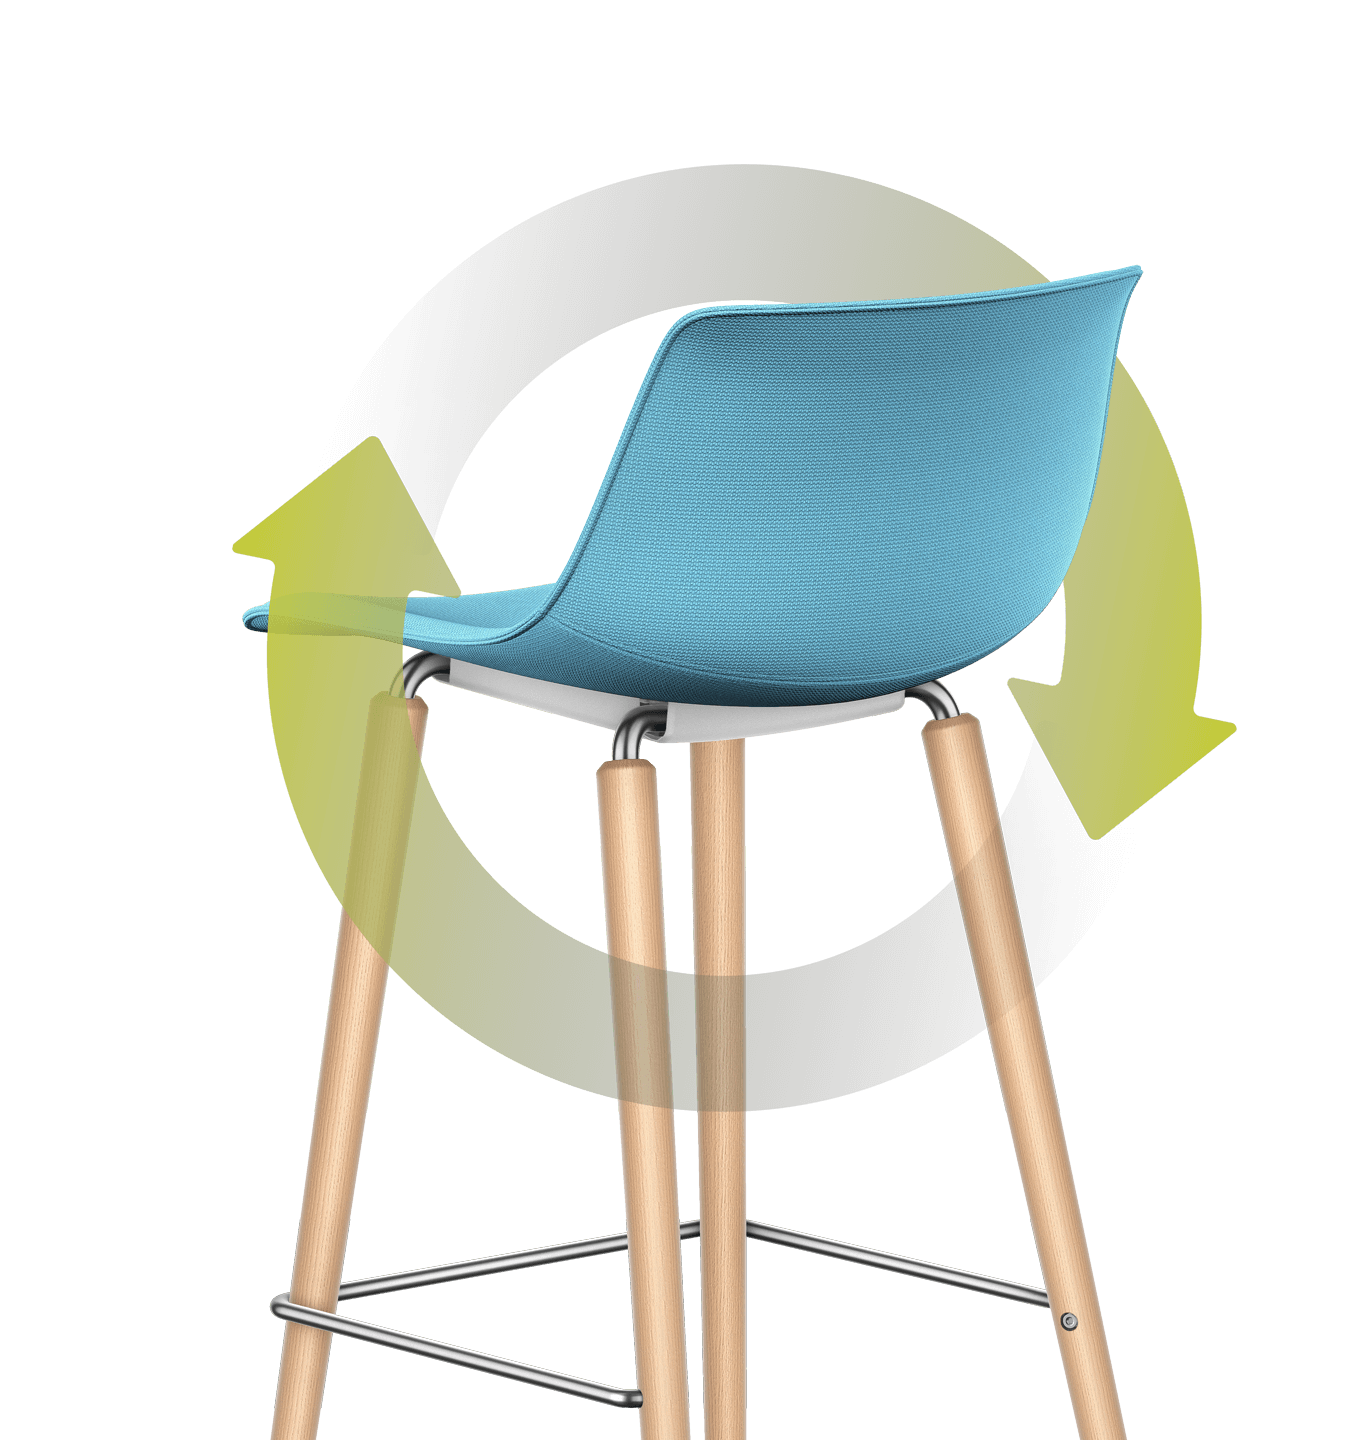 Um den Barstuhl mit blauem Sitz- und Rückenpolster mit Vierfuß-Holzgestell schlingt sich ein illustriertes grünes Blatt. Der Stängel windet sich kreisförmig um den Stuhl, das Blatt lehnt an die Rückseite des Rückenpolsters an.